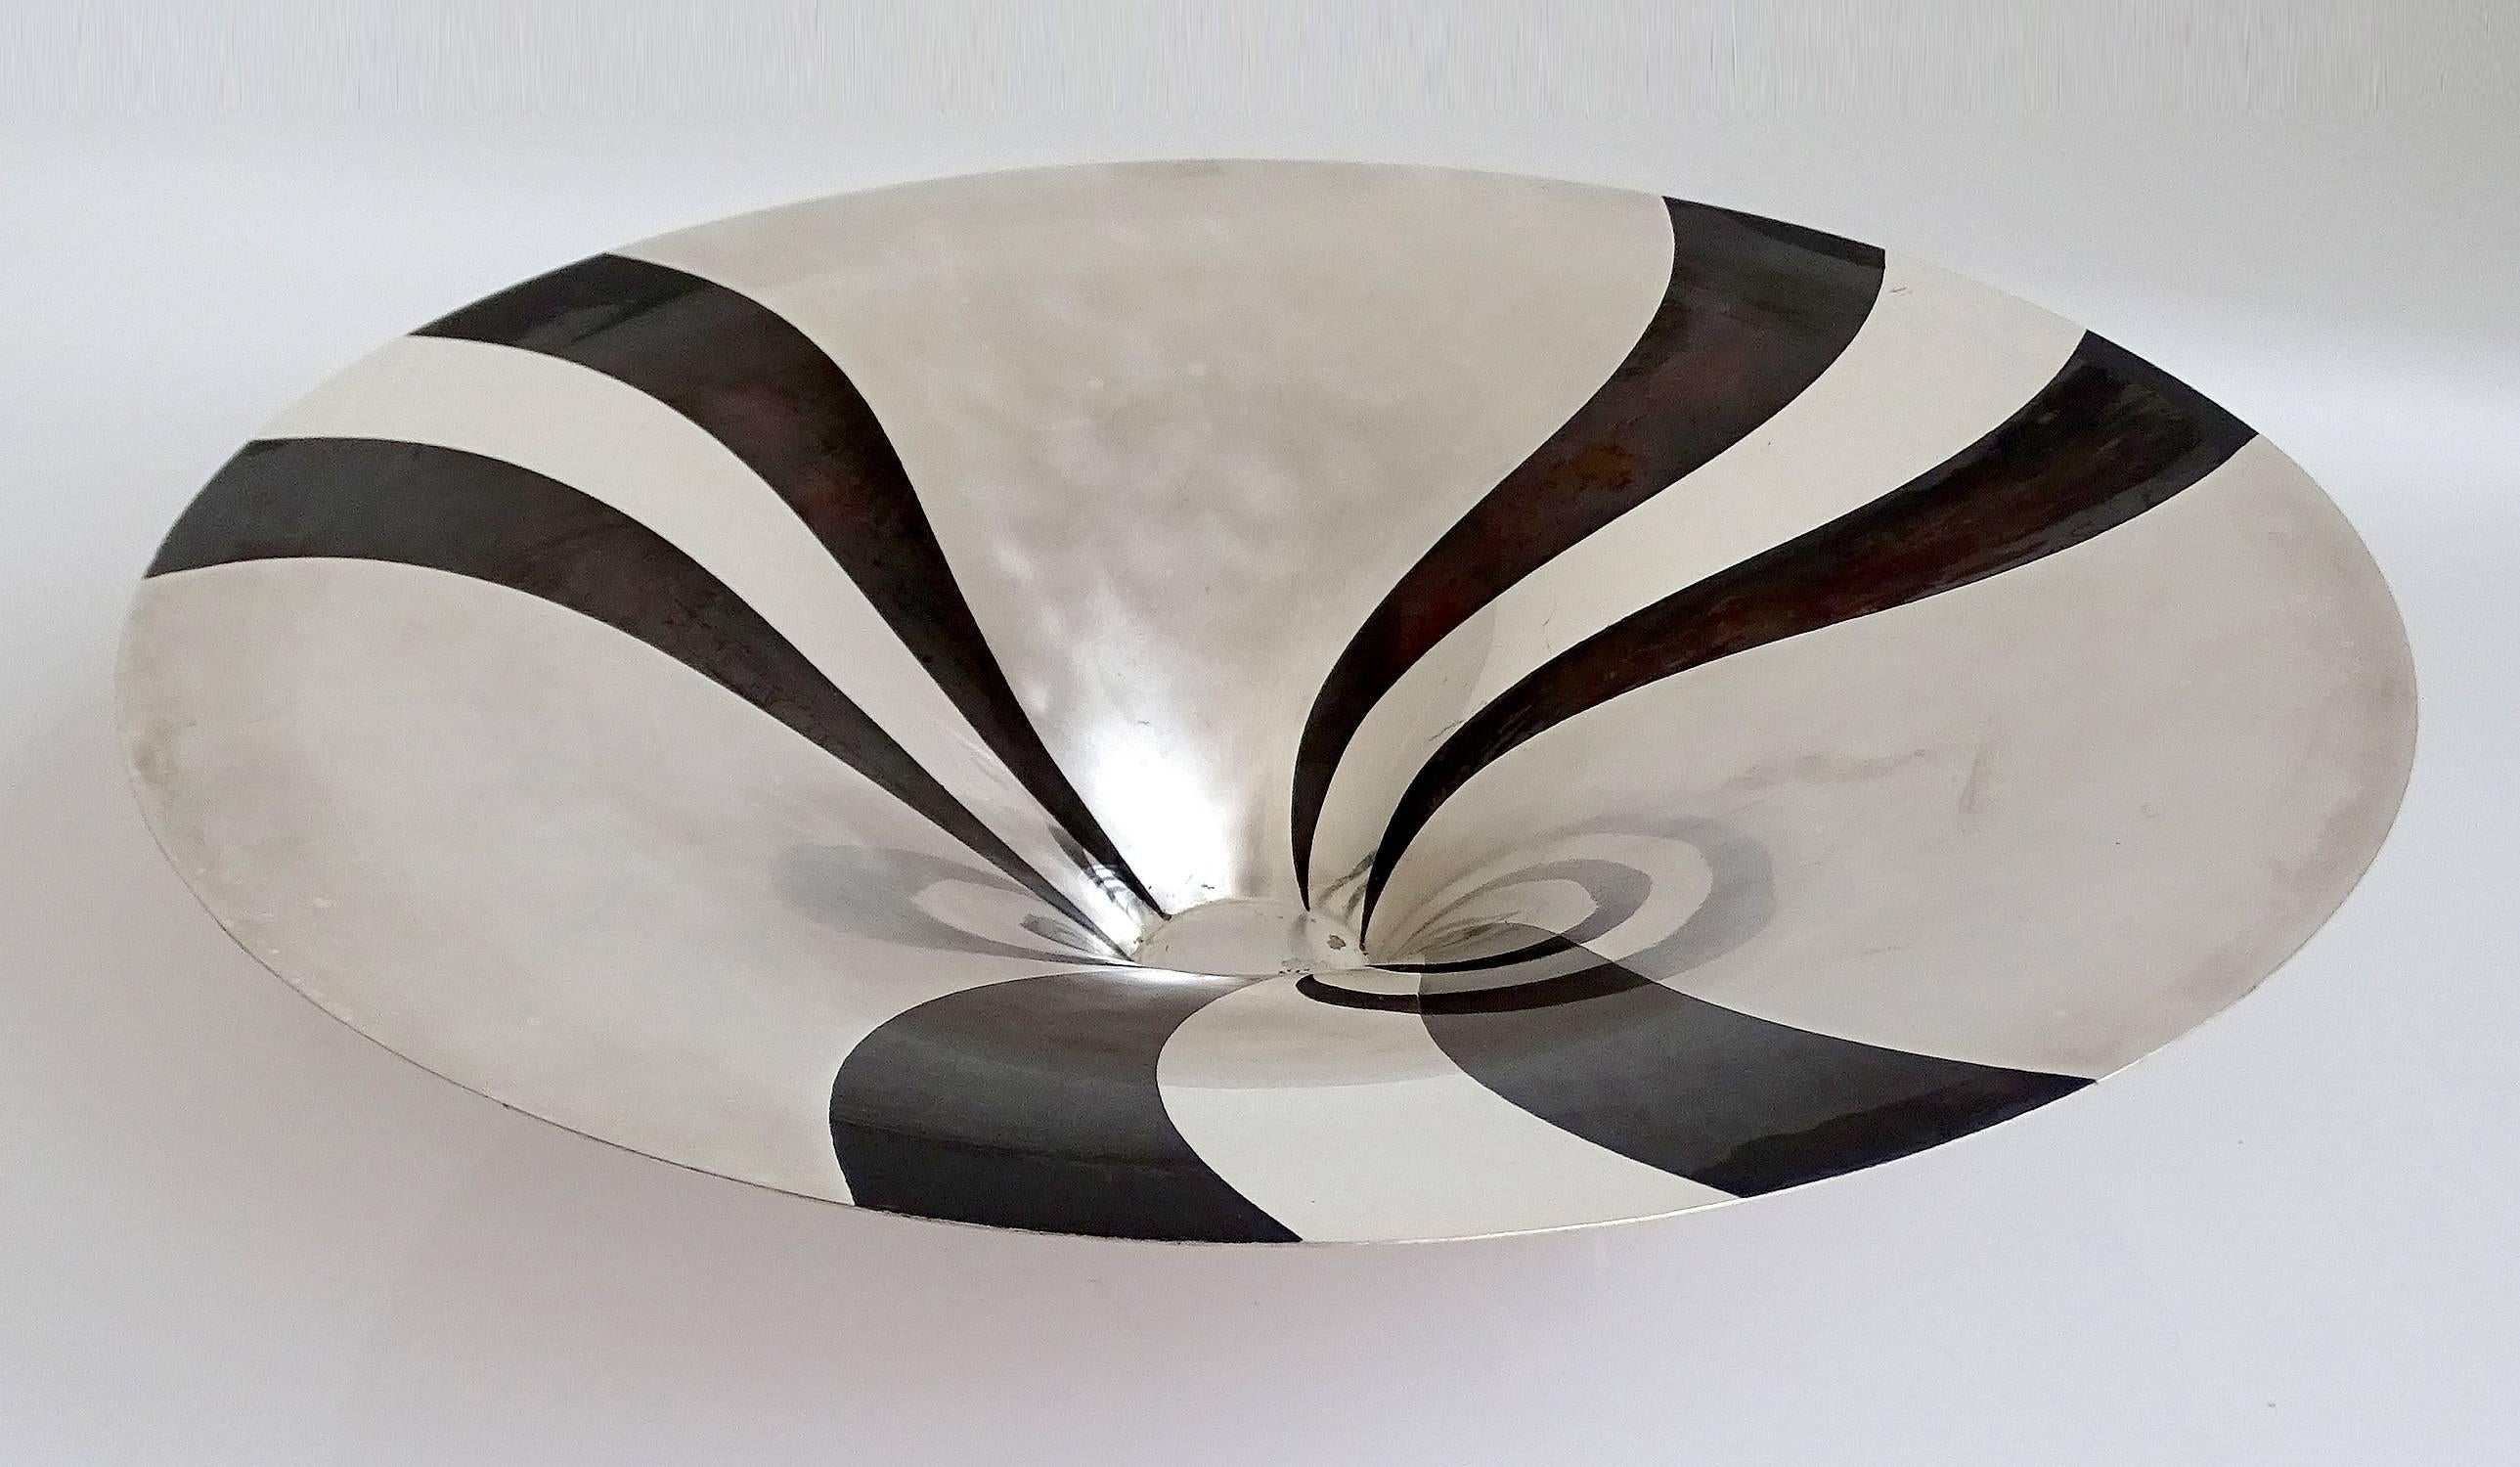 Large Art Deco WMF Ikora Silver Plated Bowl Centerpiece, 1930s Modernist Design (Deutsch)